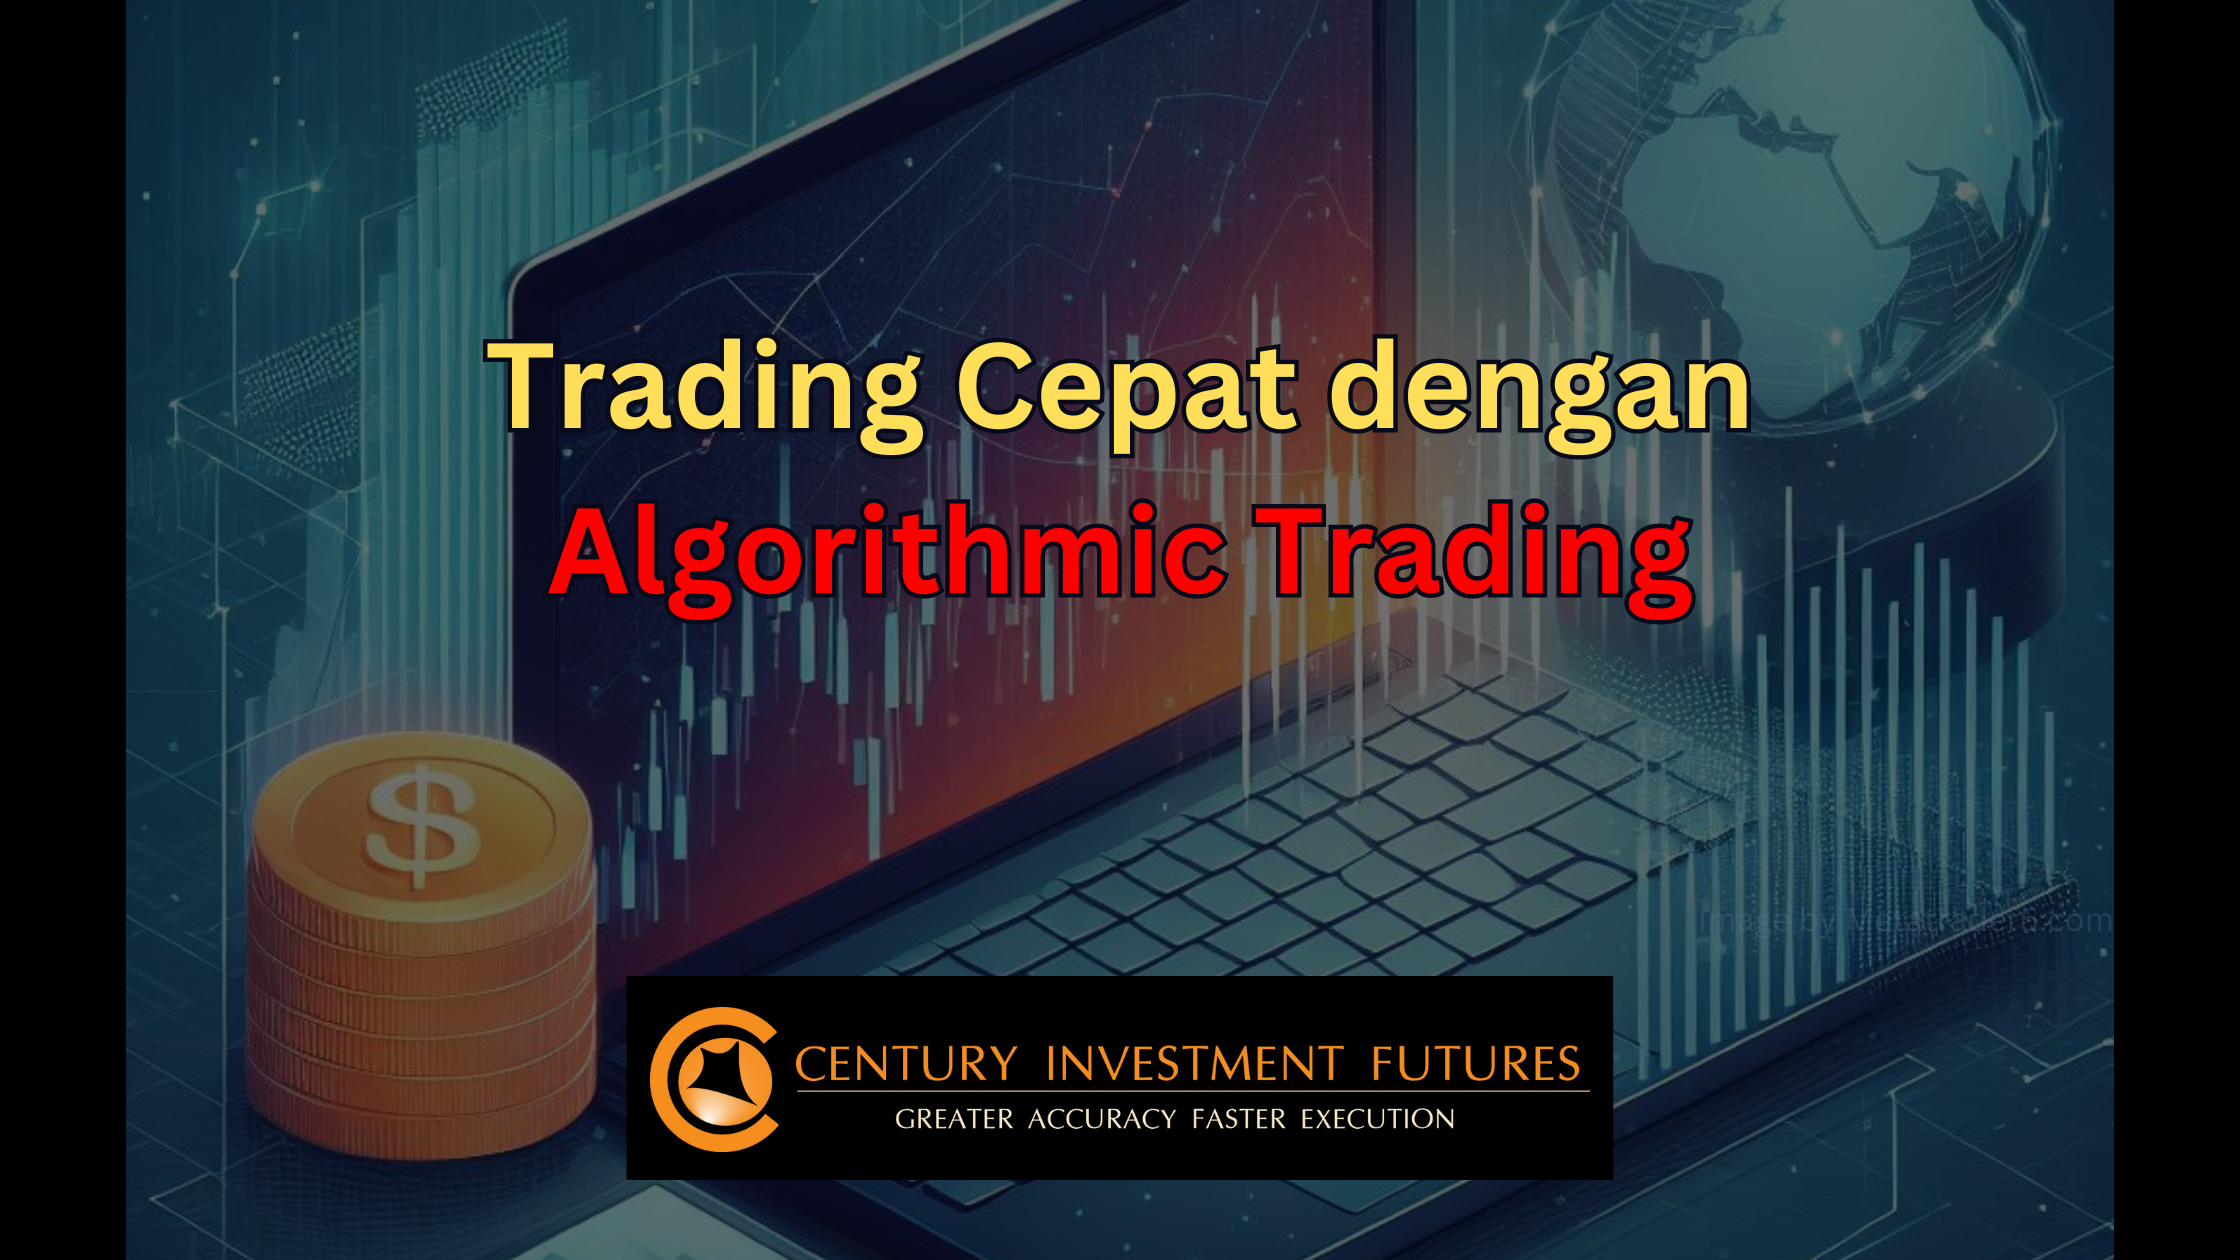 Trading Cepat dengan Algorithmic Trading